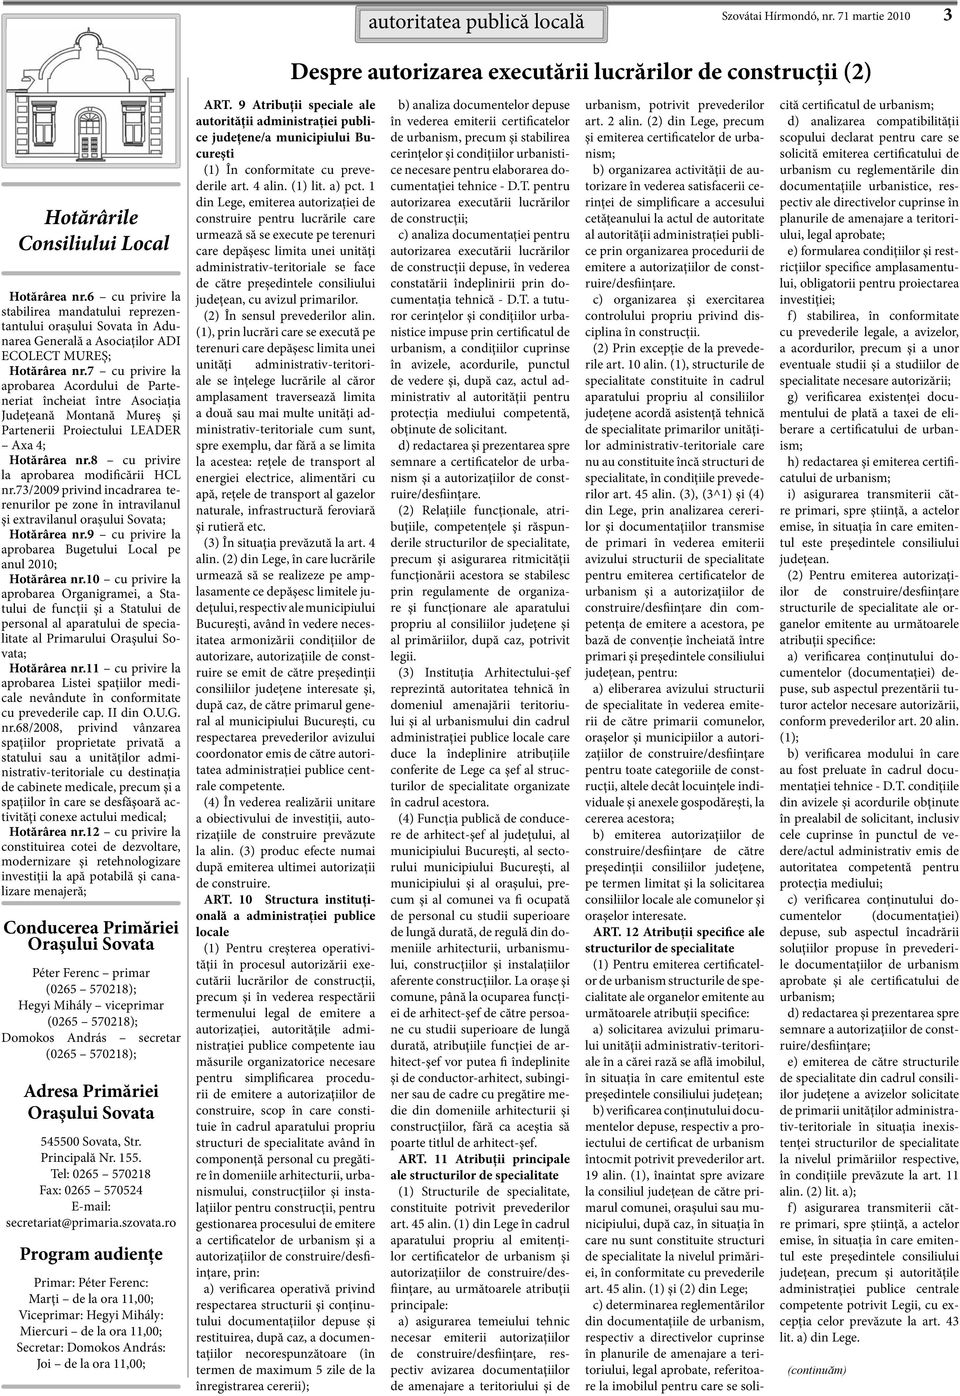 7 cu privire la aprobarea Acordului de Parteneriat încheiat între Asociația Județeană Montană Mureș și Partenerii Proiectului LEADER Axa 4; Hotărârea nr.8 cu privire la aprobarea modificării HCL nr.